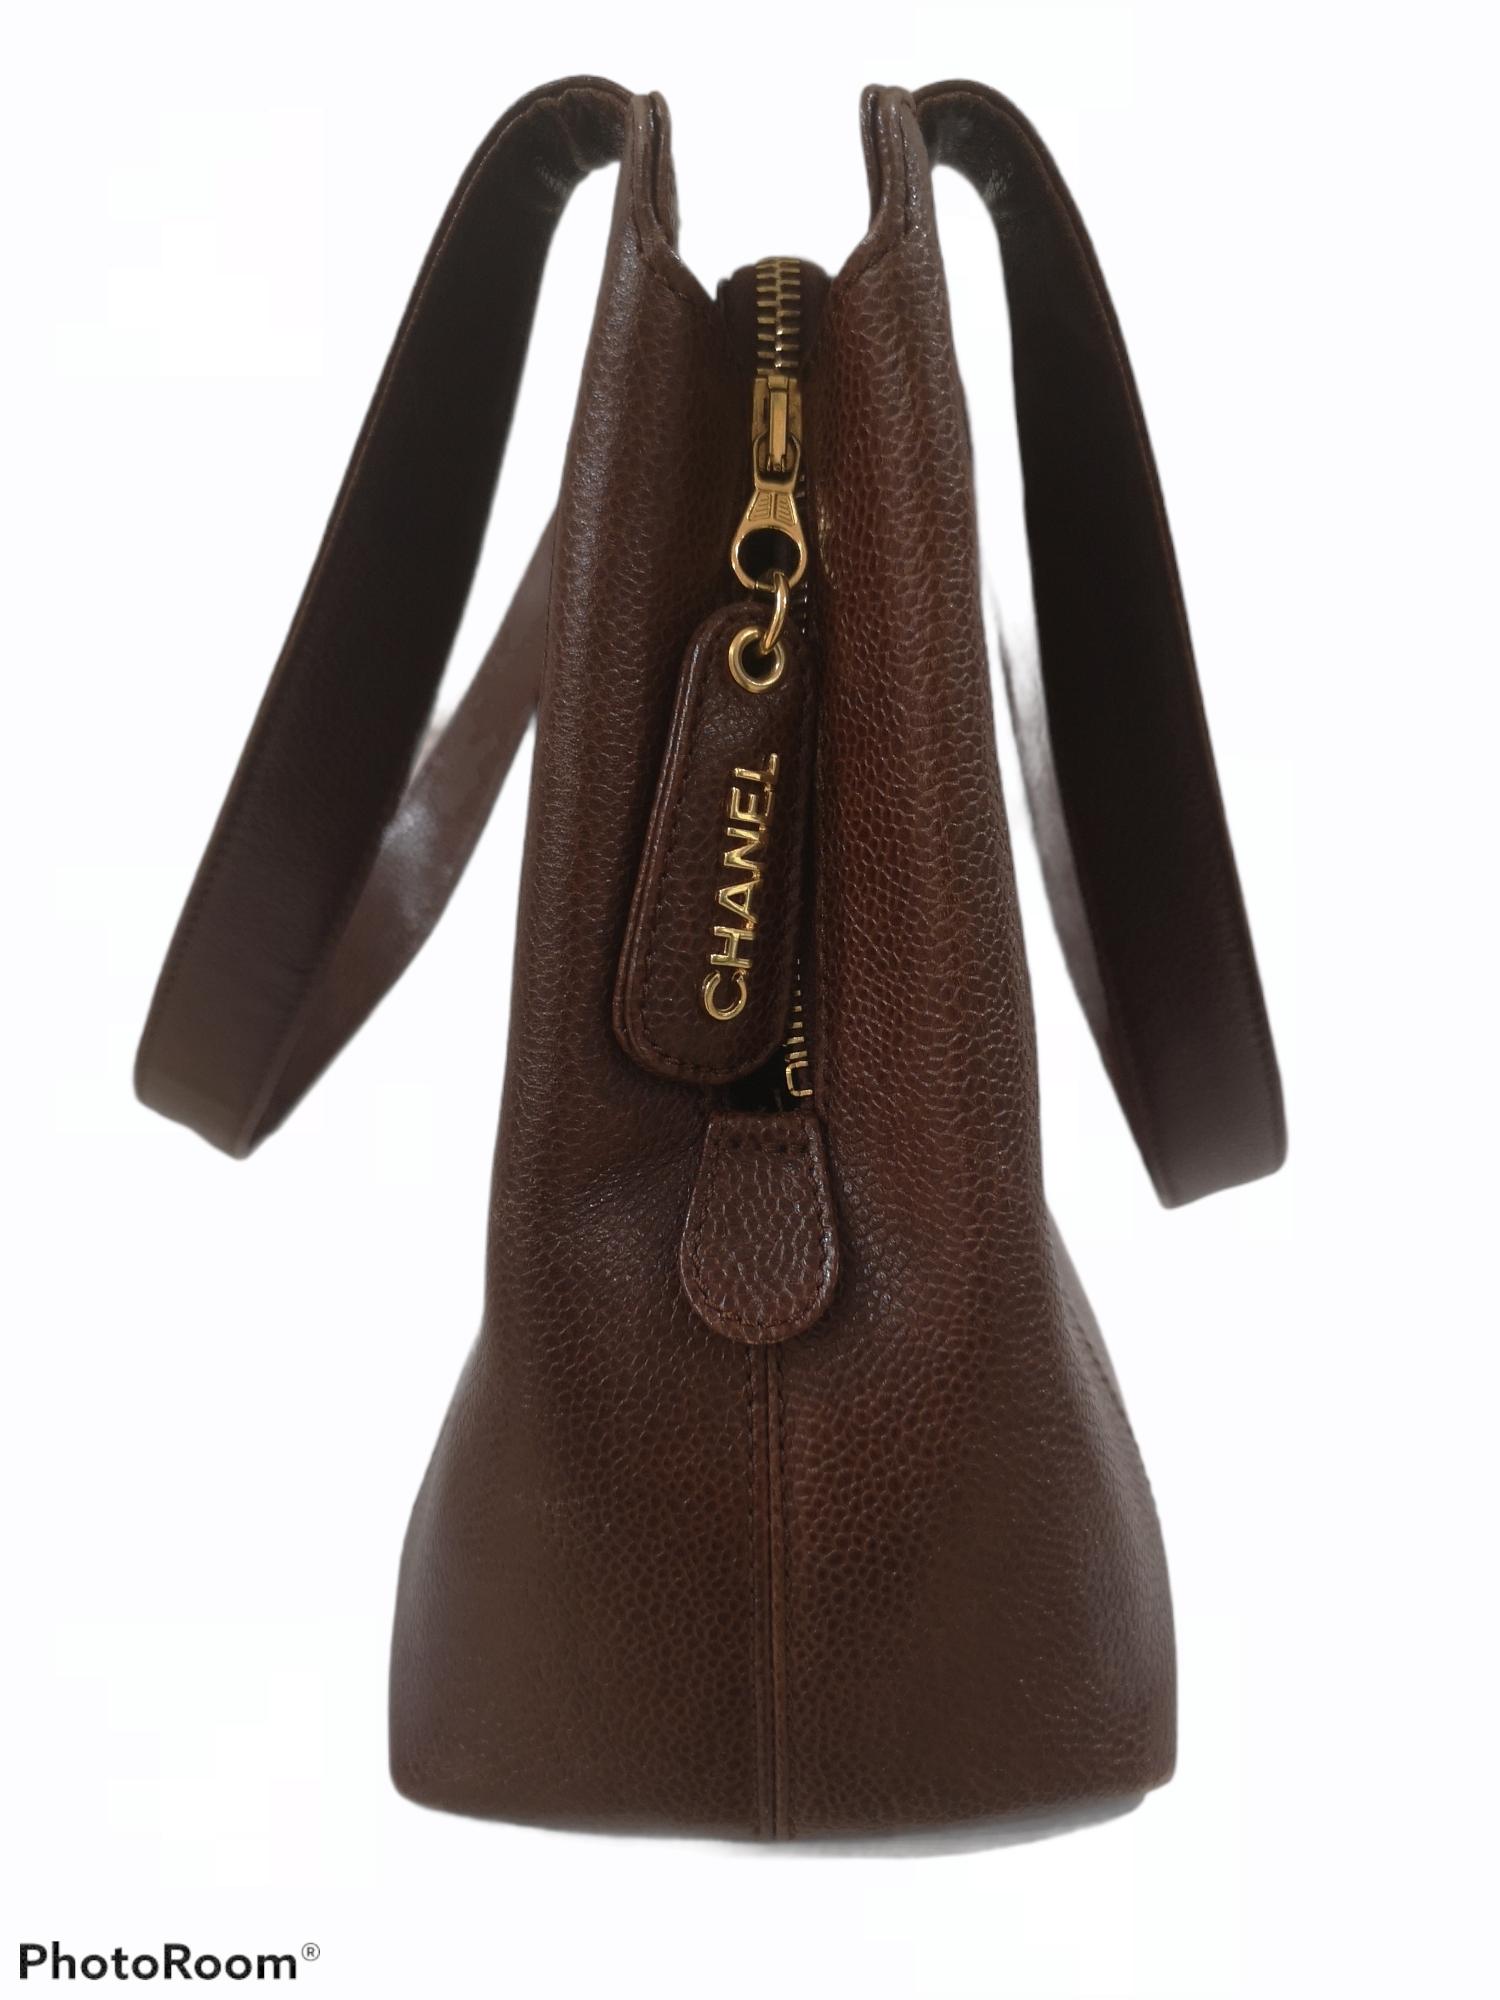 Women's or Men's Chanel brown leather Shoulder bag